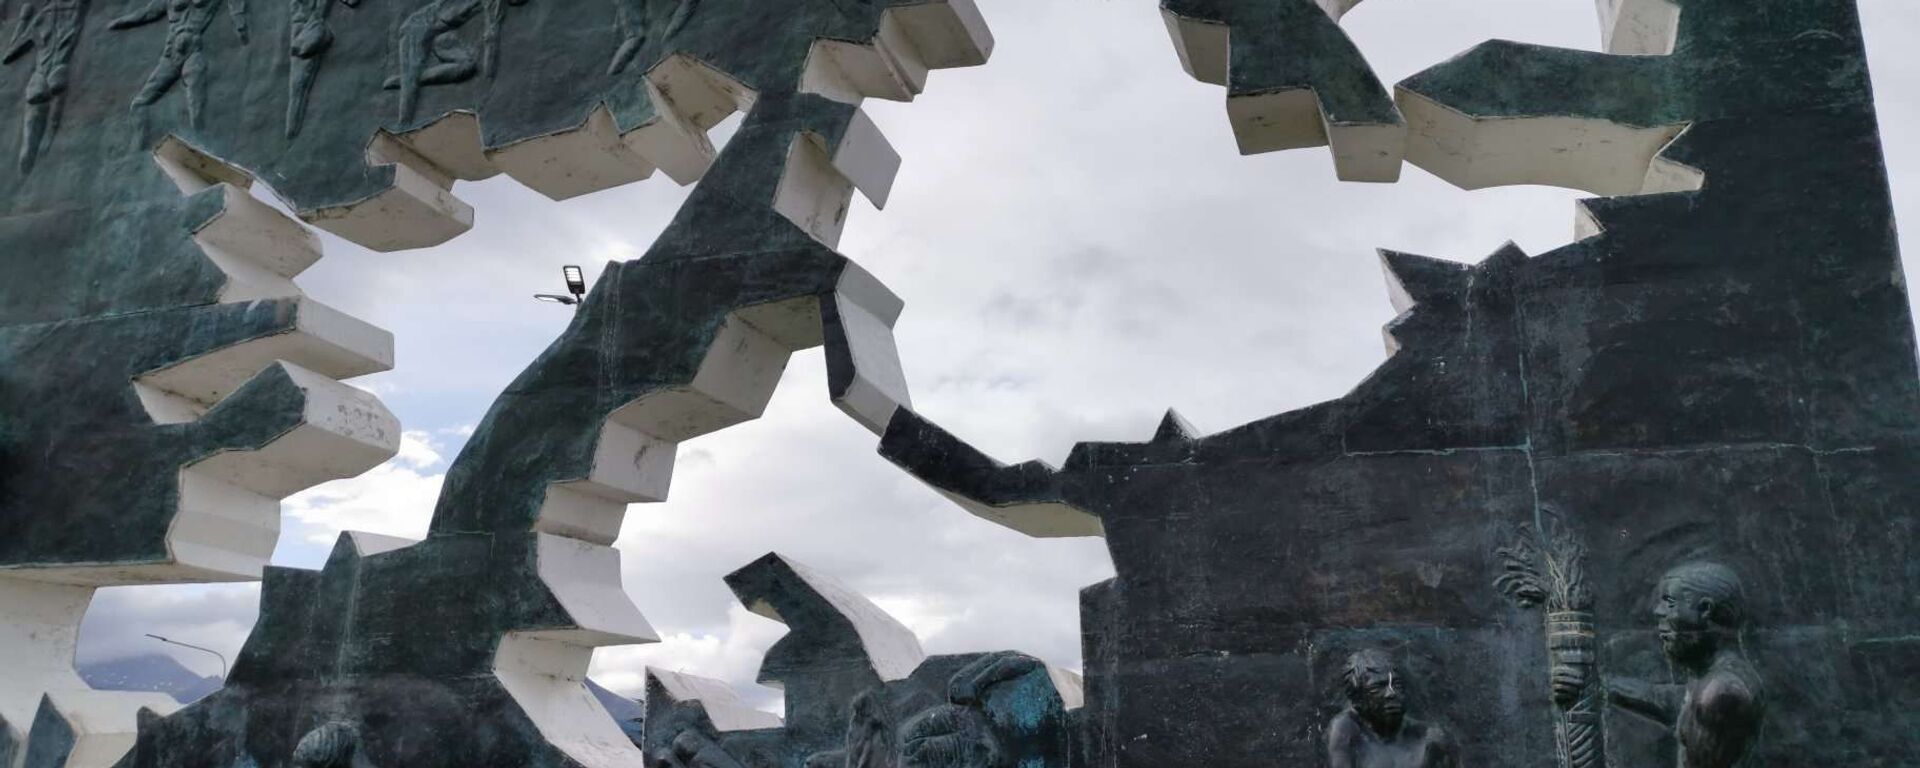 Monumento a los Caídos en Malvinas, en Ushuaia, Argentina - Sputnik Mundo, 1920, 02.04.2021